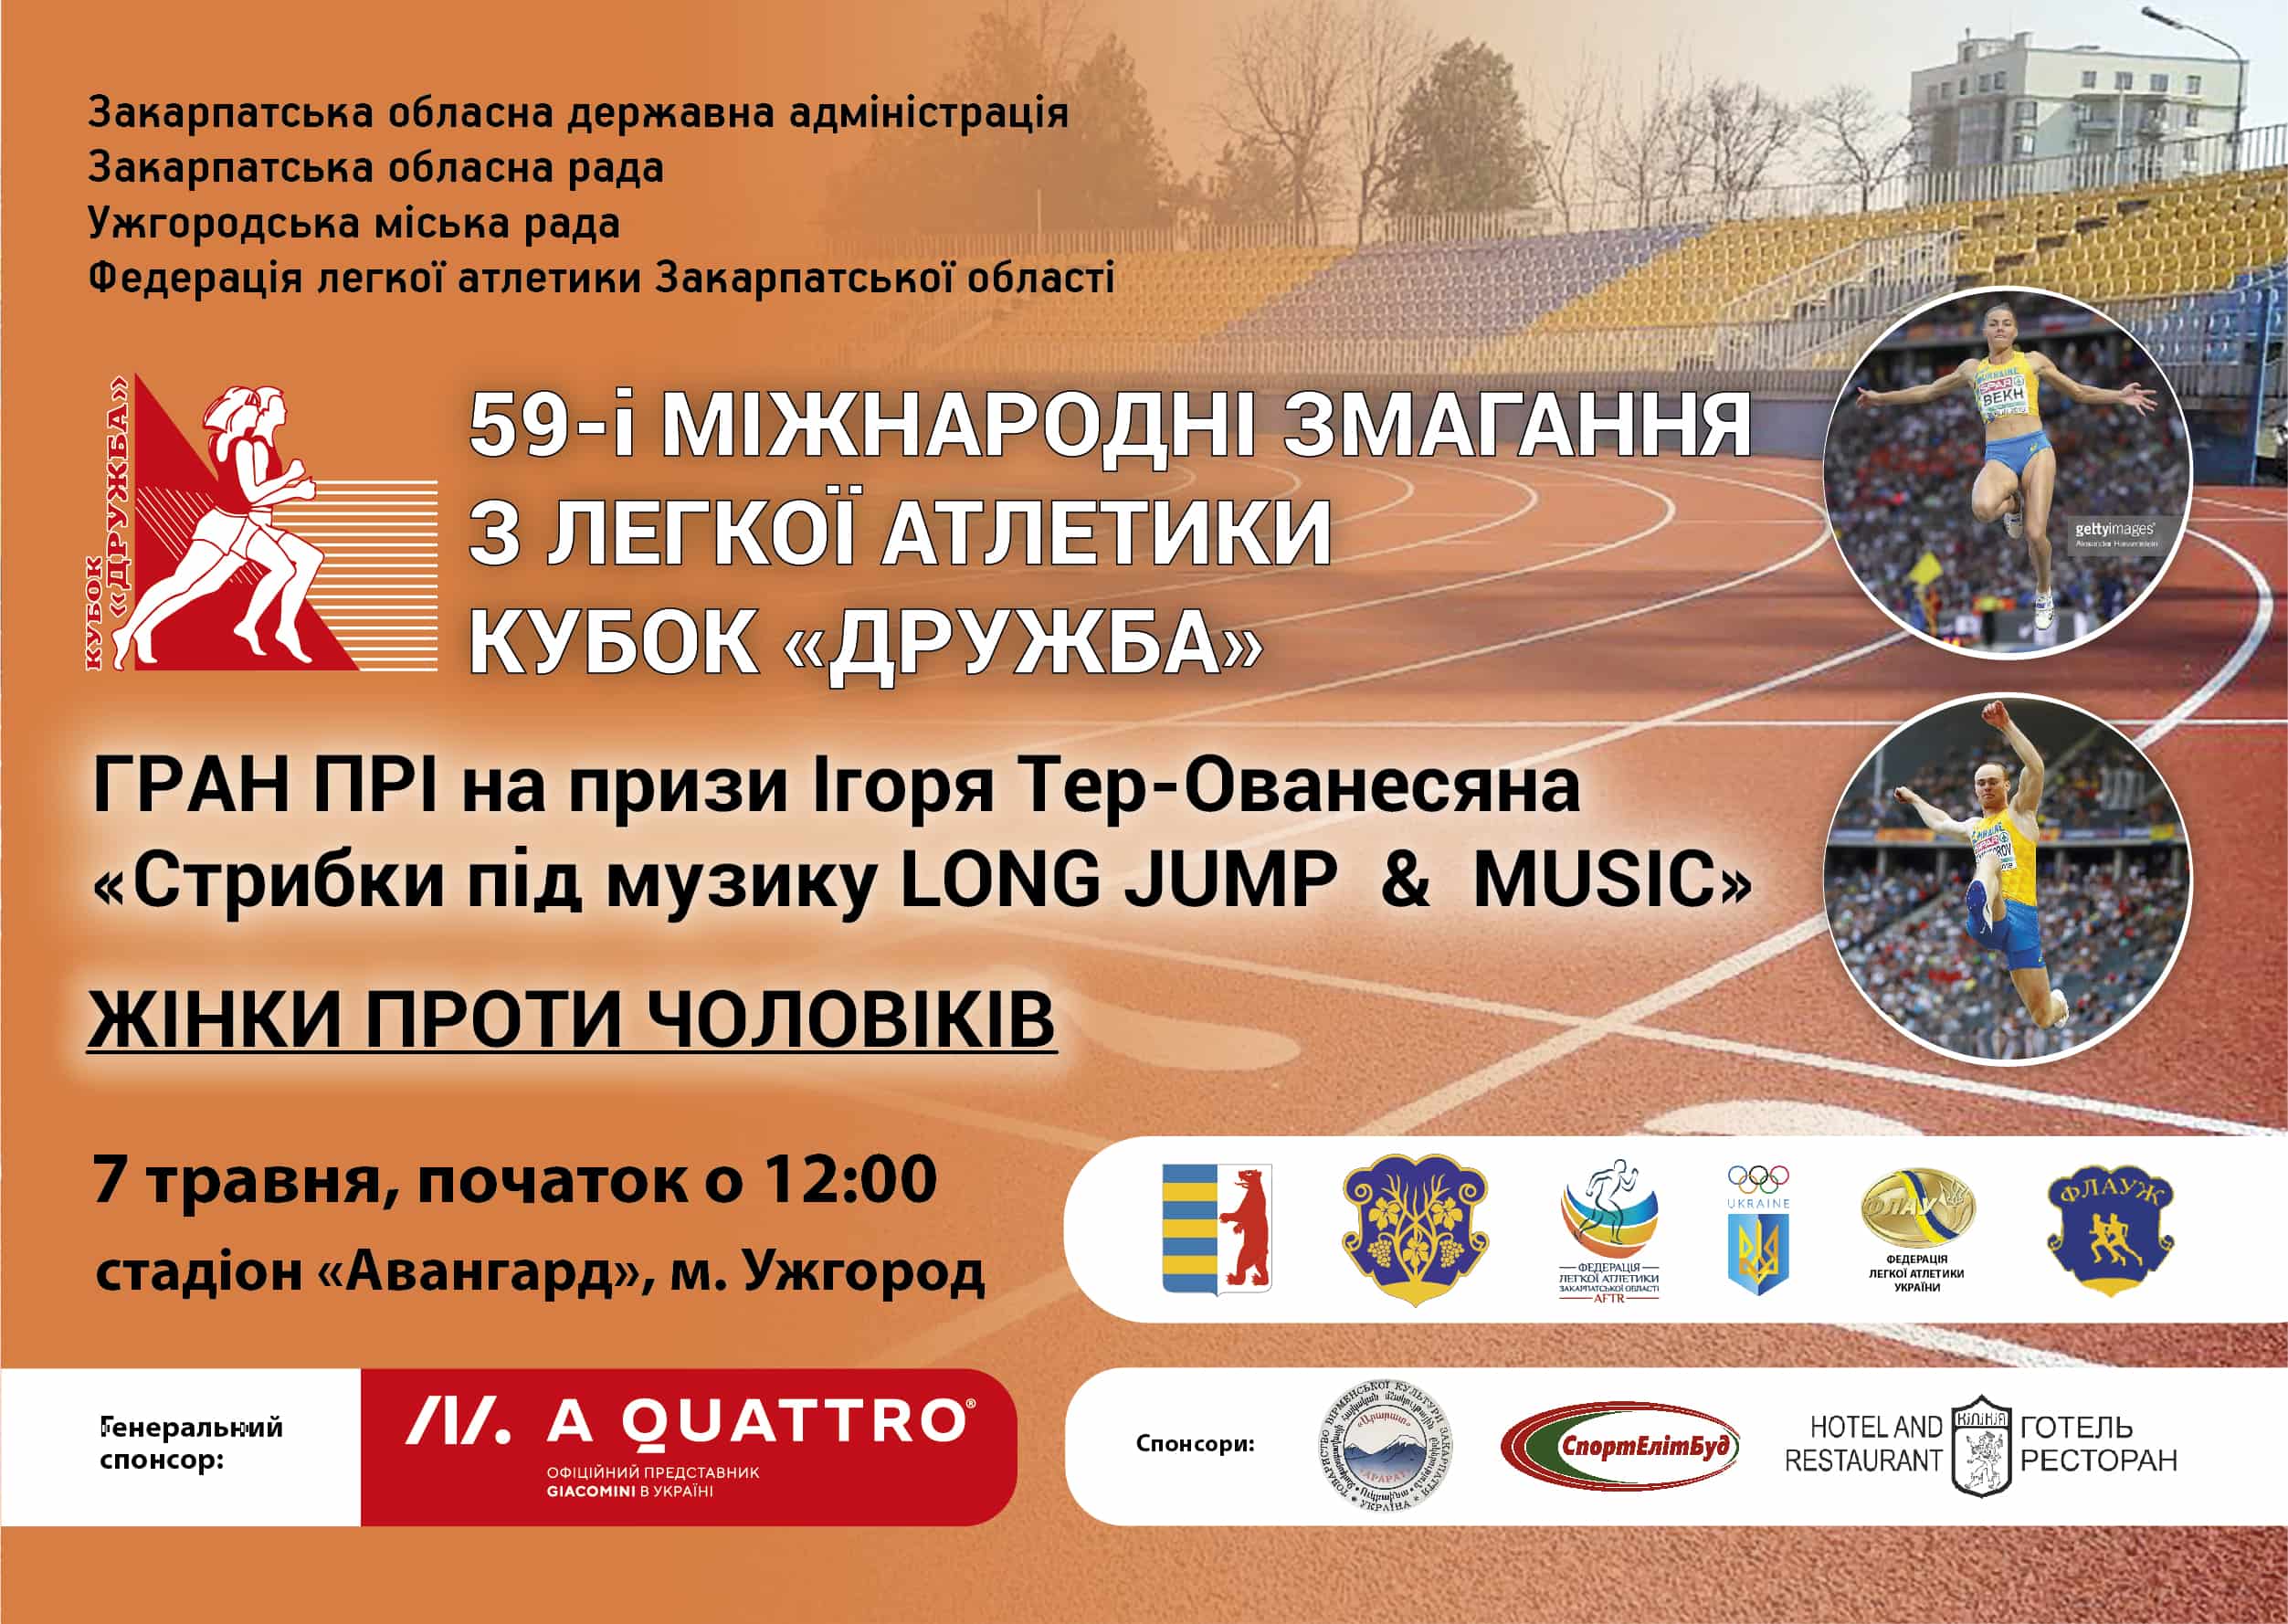 7 травня в Ужгороді –  59-і Міжнародні змагання з легкої атлетики Кубок «Дружба»